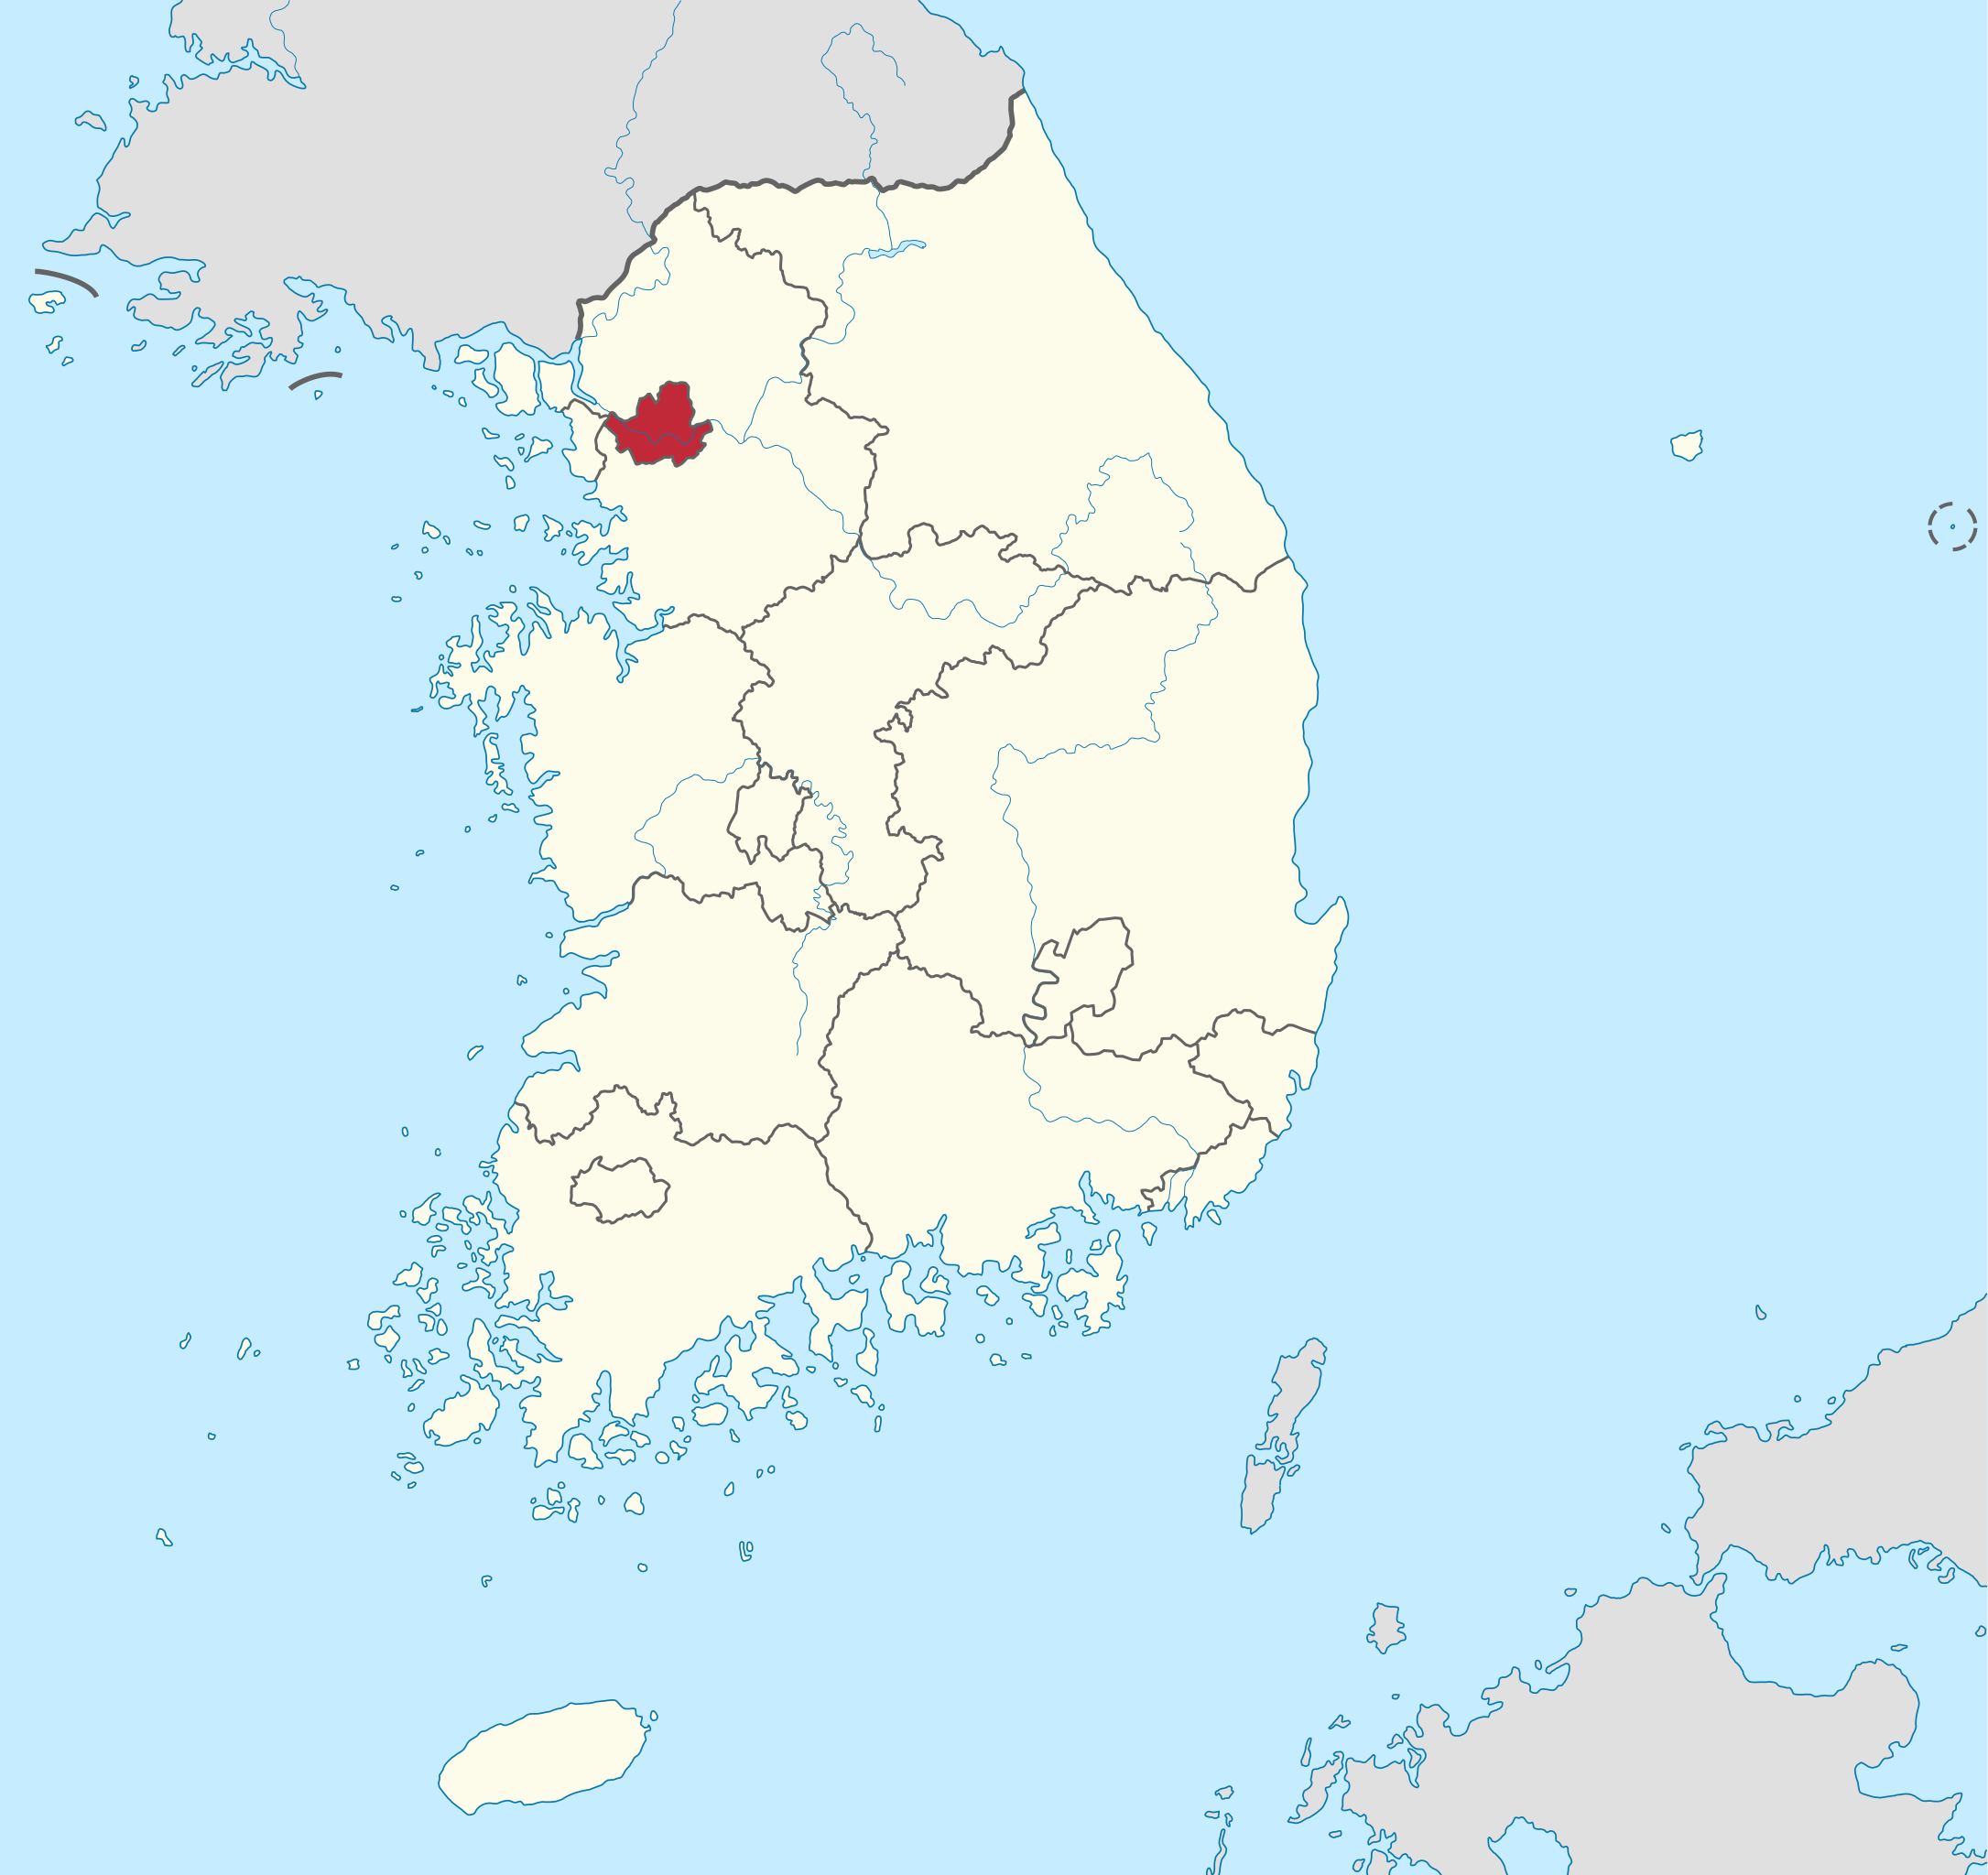 Korea selatan vs moldova